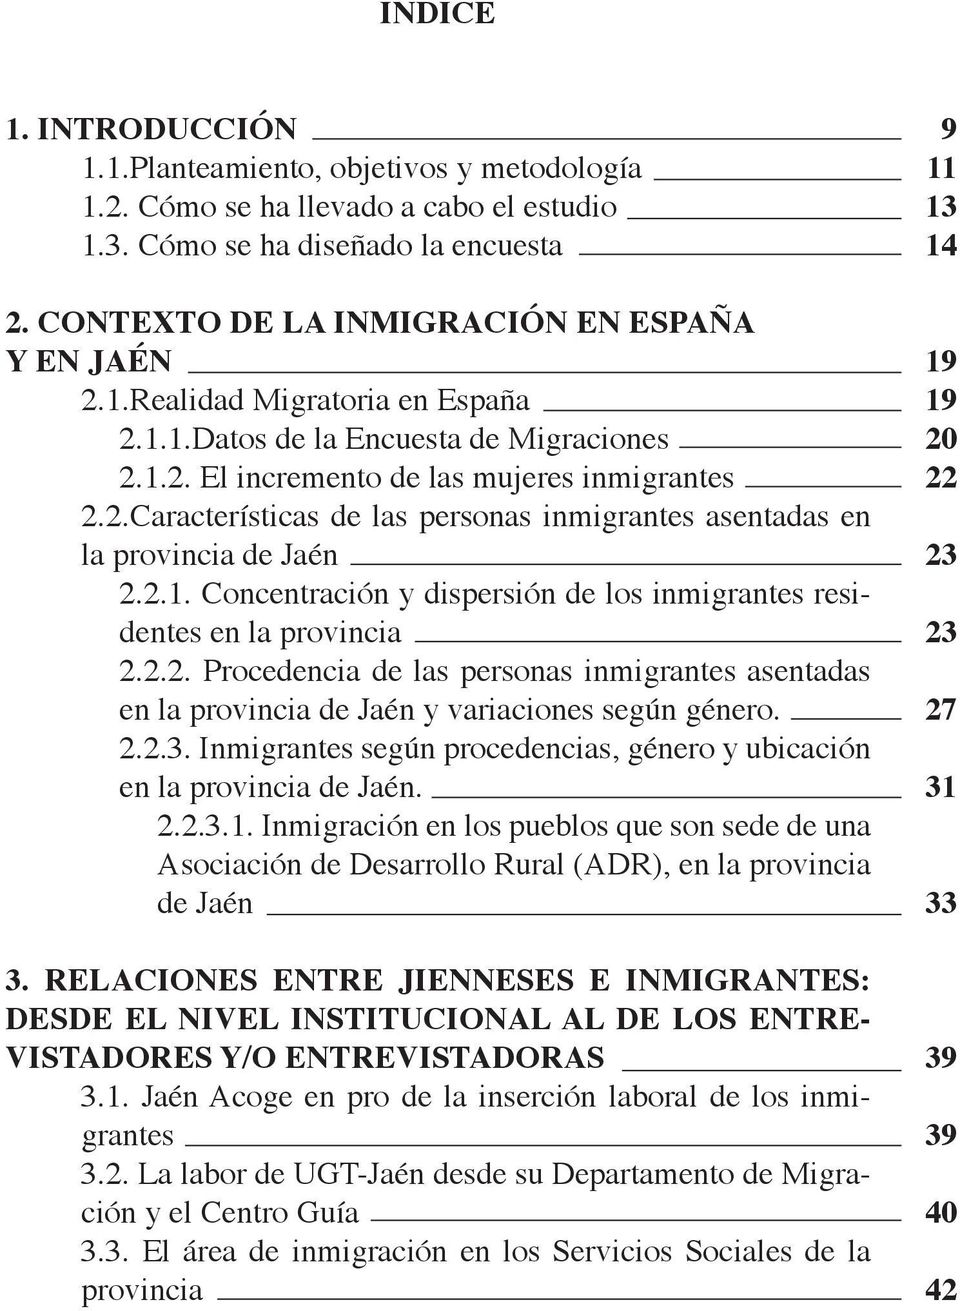 2.2. Procedencia de las personas inmigrantes asentadas en la provincia de Jaén y variaciones según género. 2.2.3. Inmigrantes según procedencias, género y ubicación en la provincia de Jaén. 2.2.3.1.